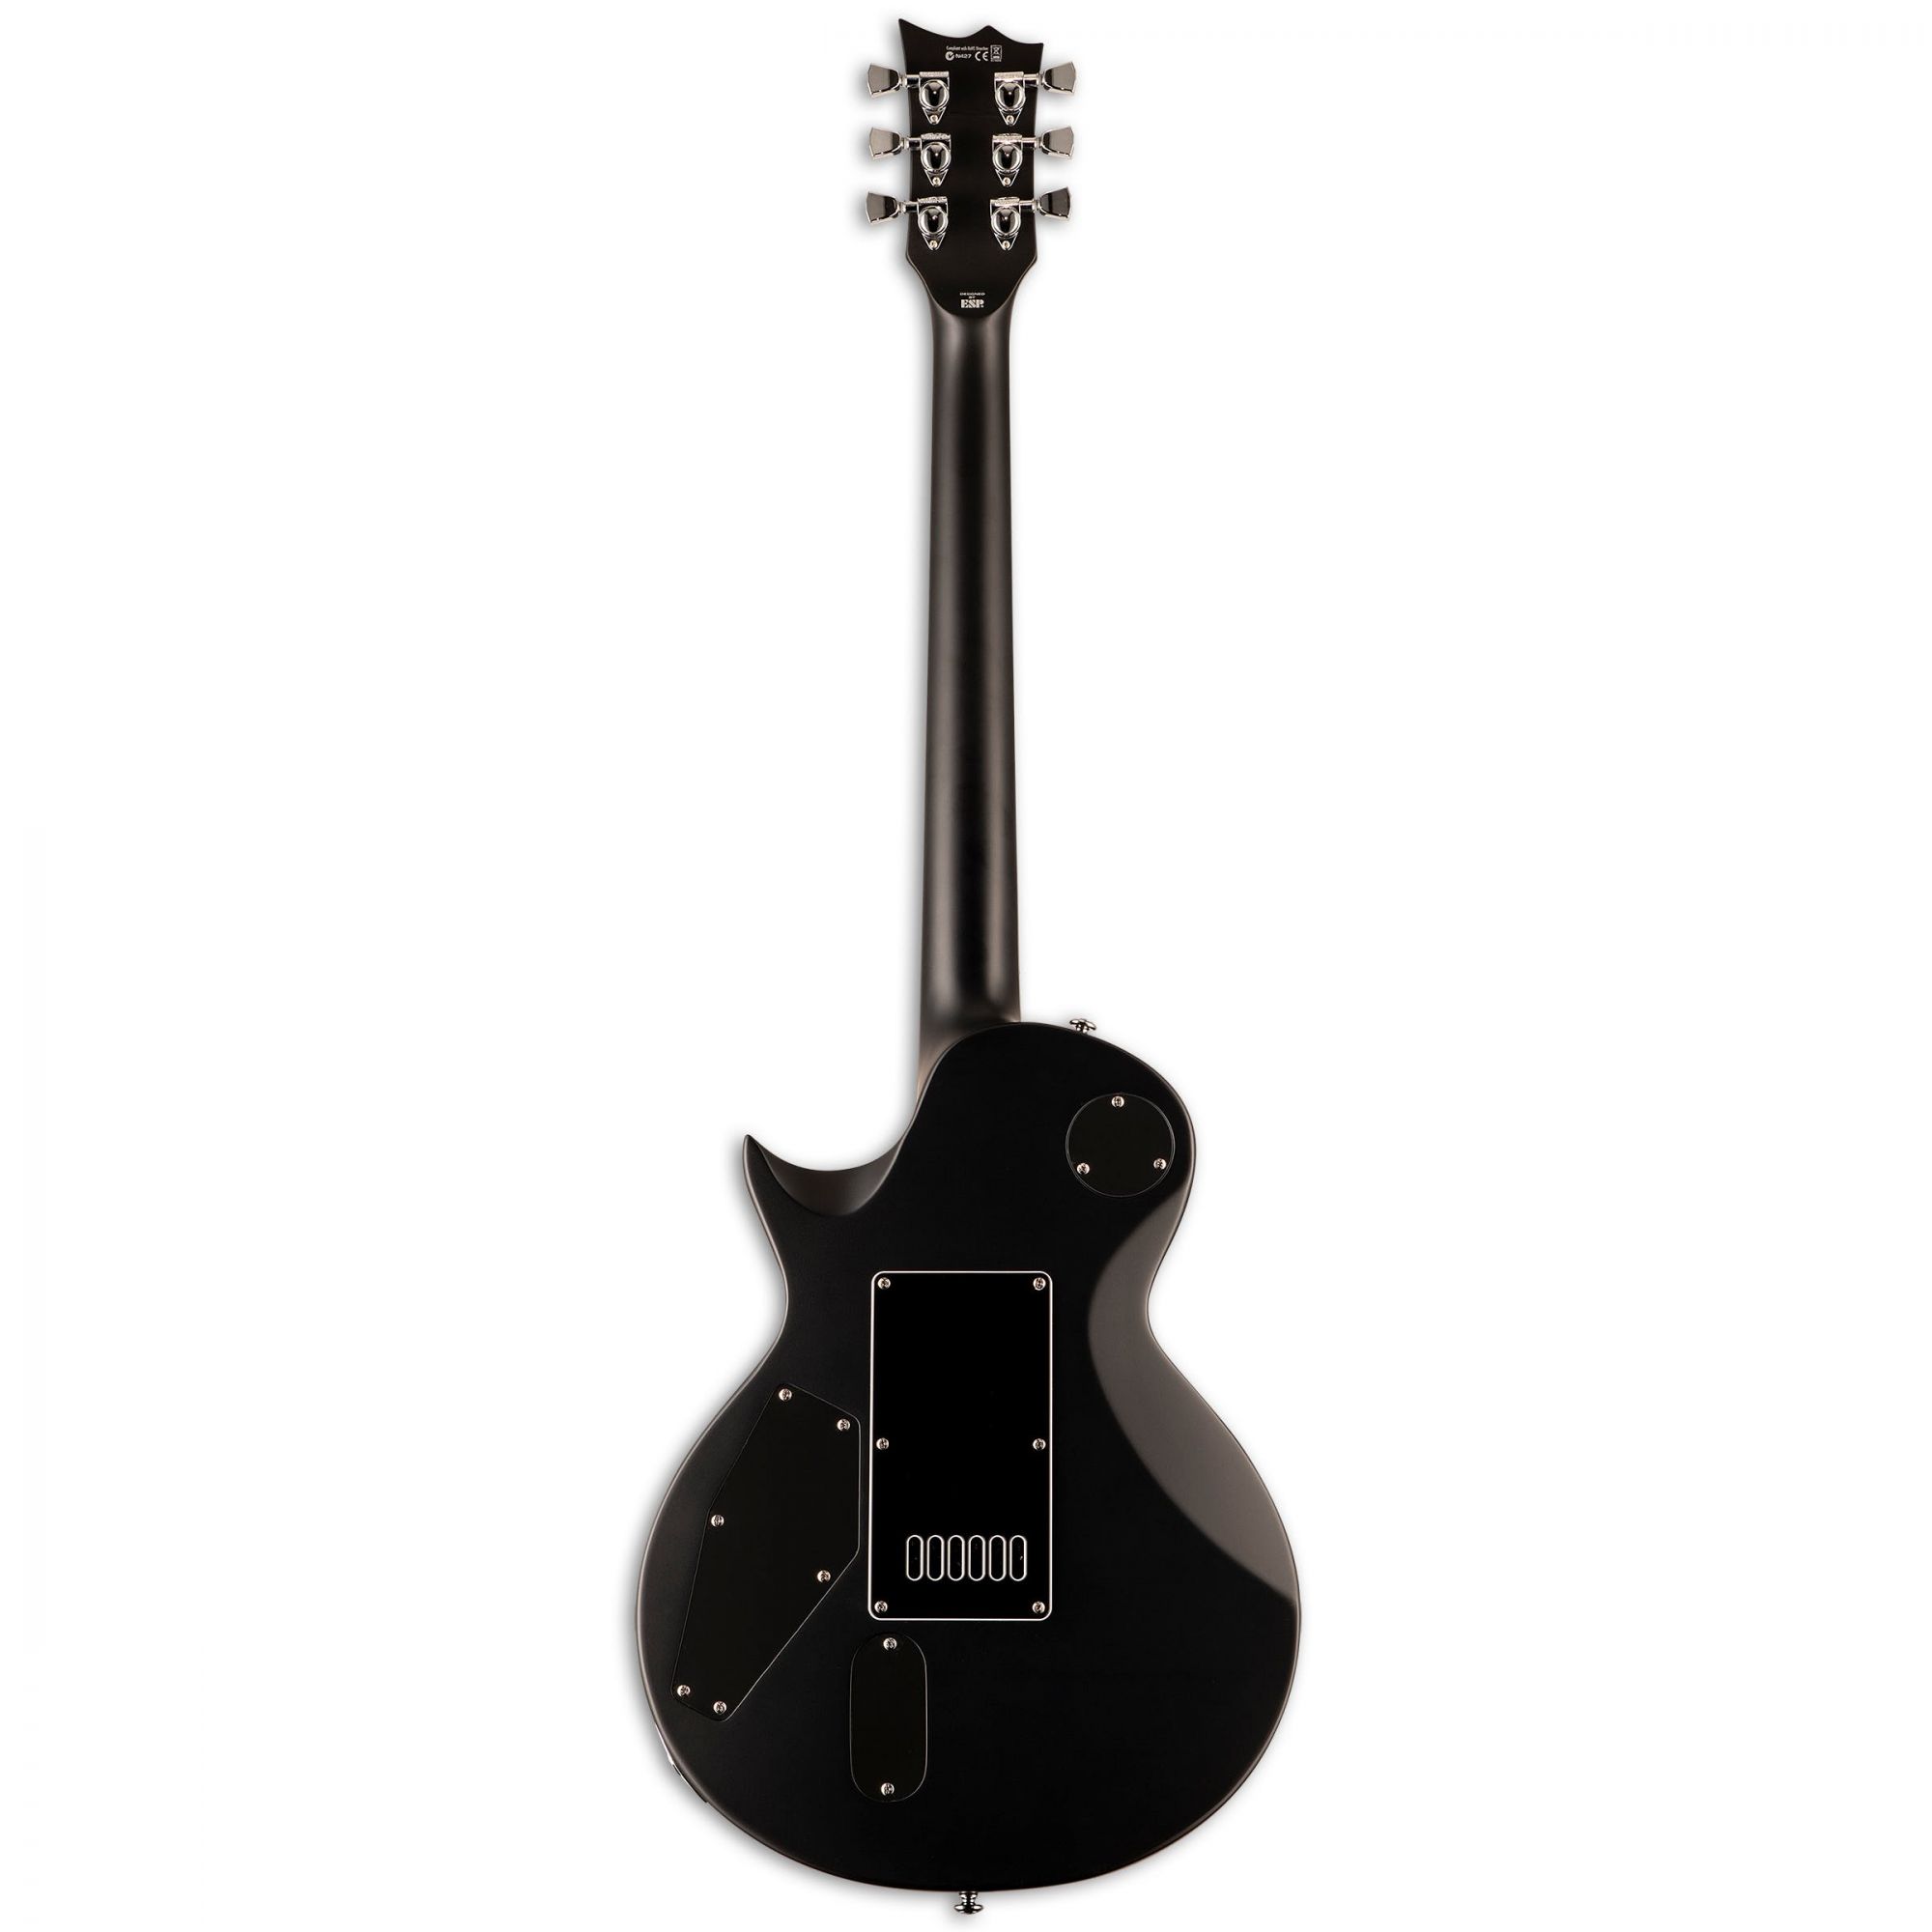 ESP LTD EC-1000 EverTune BB Electric Guitar in Black Satin